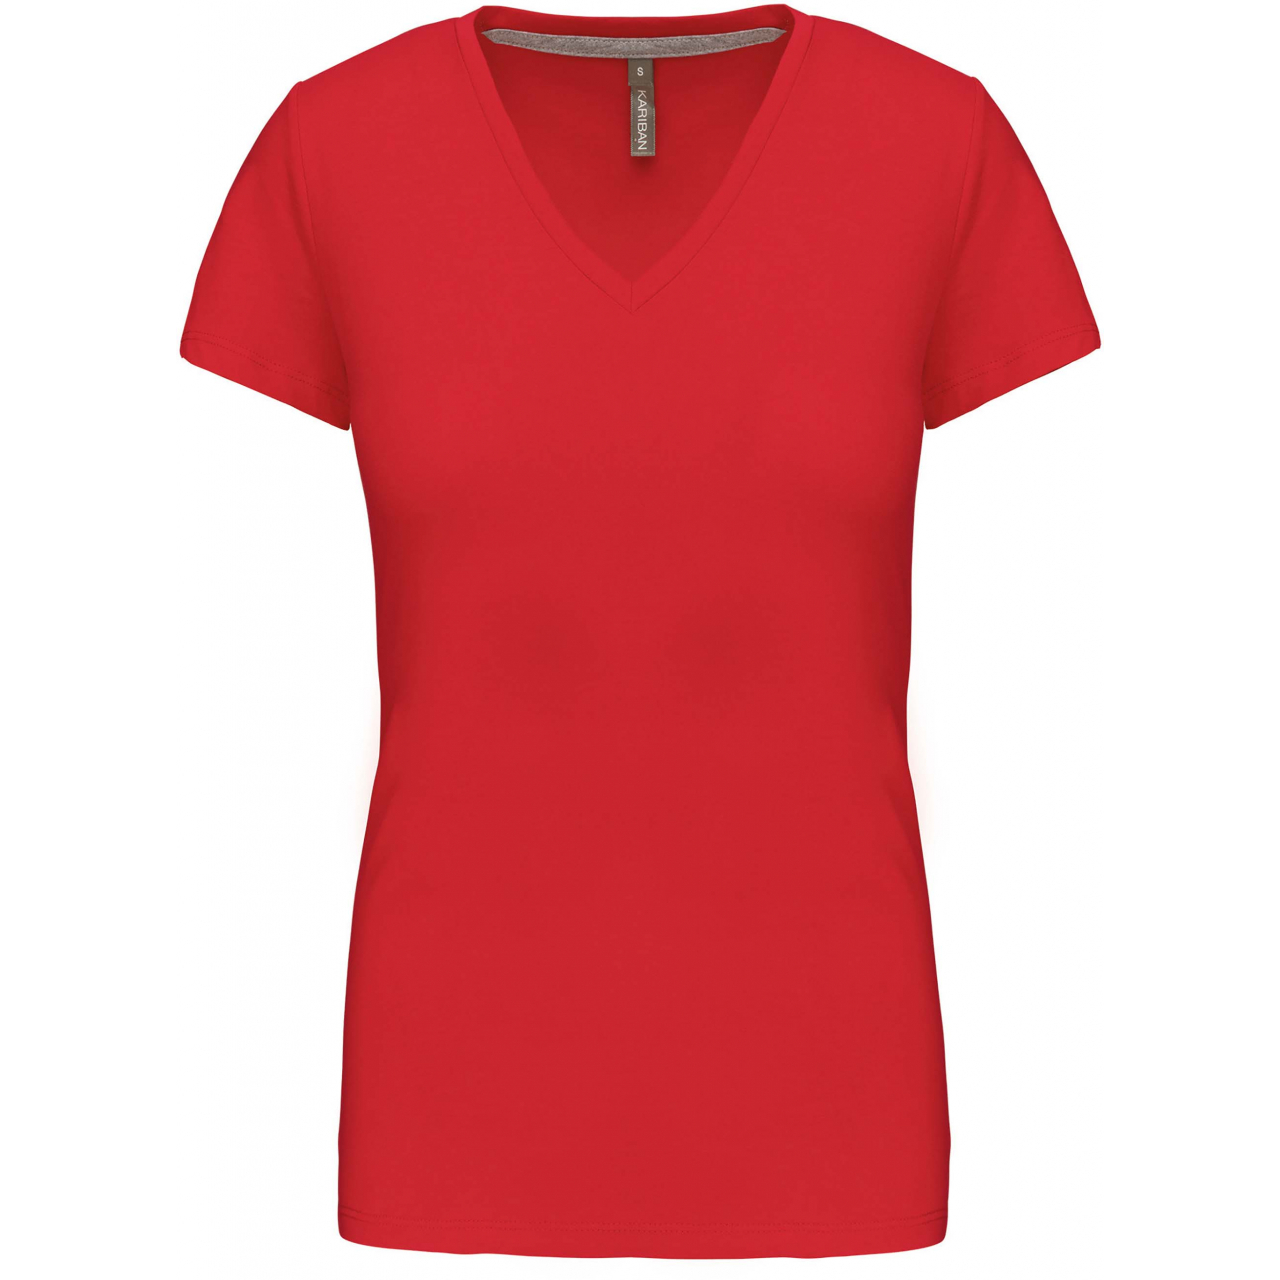 Dámské tričko Kariban V-neck s krátkým rukávem - červené, XXL